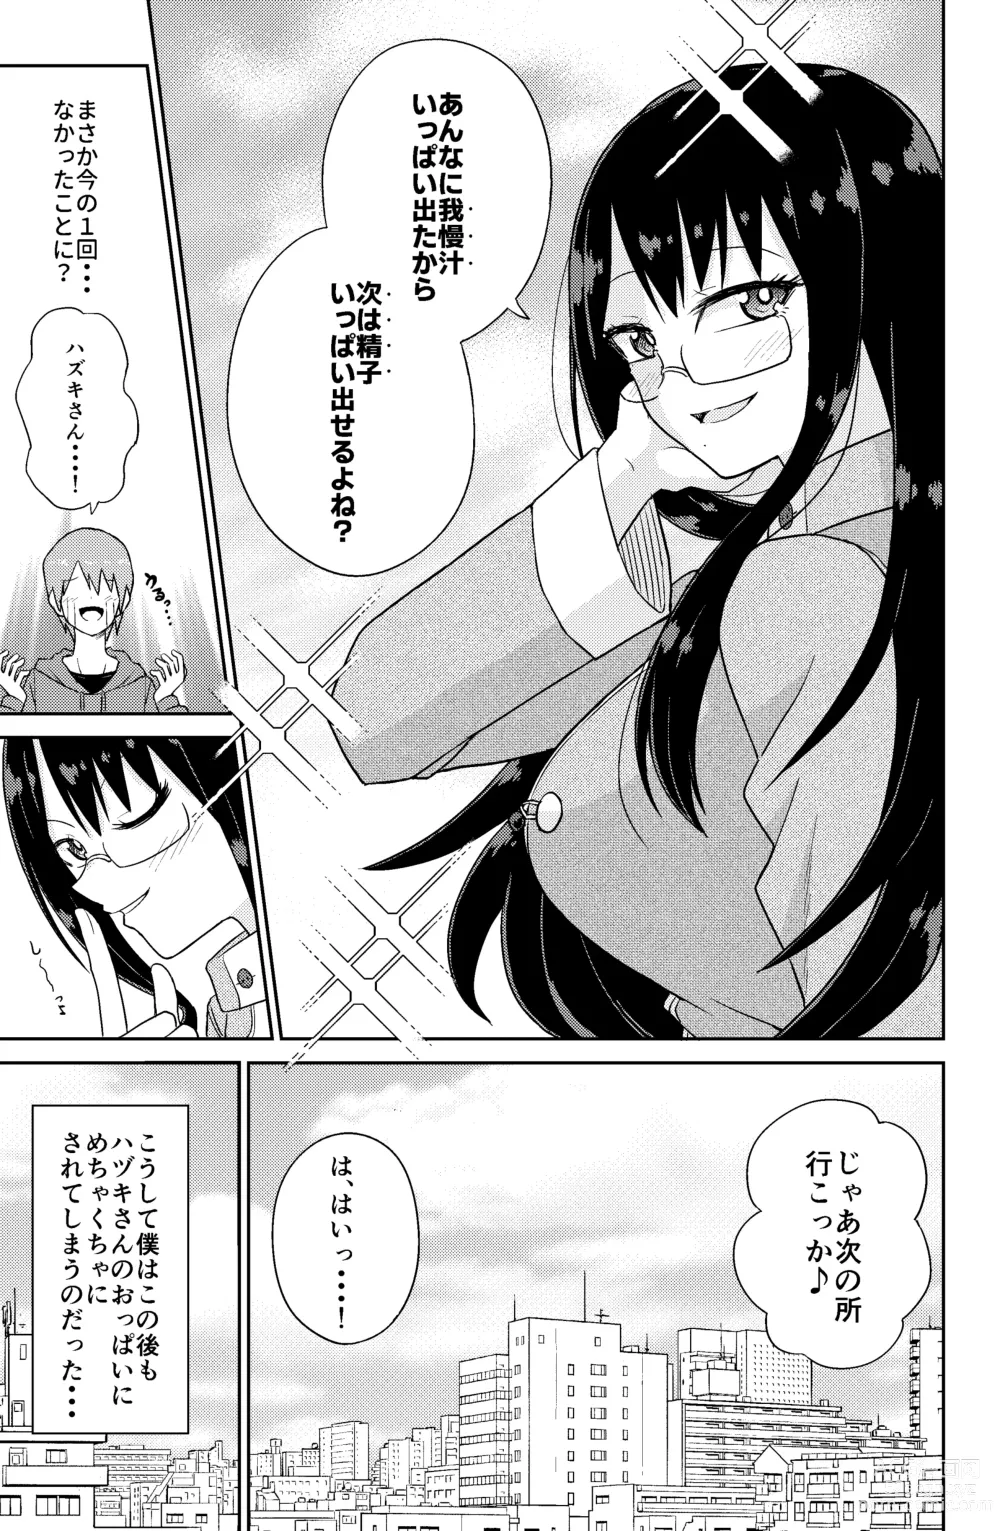 Page 19 of doujinshi Paizuri Rental Girlfriend